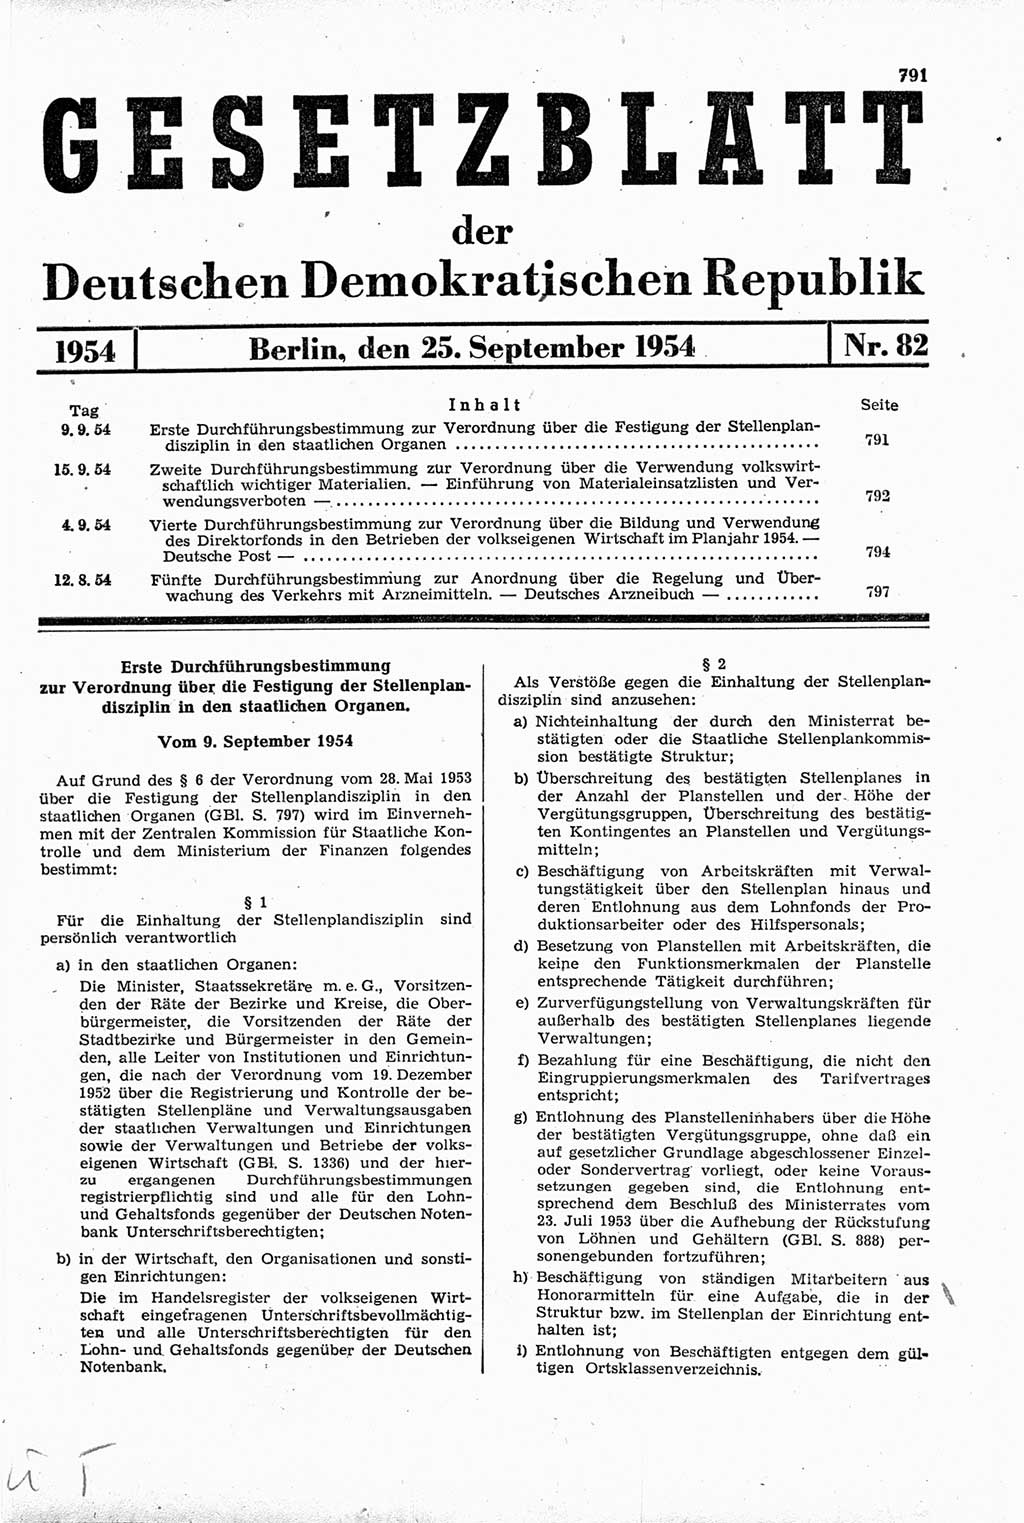 Gesetzblatt (GBl.) der Deutschen Demokratischen Republik (DDR) 1954, Seite 791 (GBl. DDR 1954, S. 791)